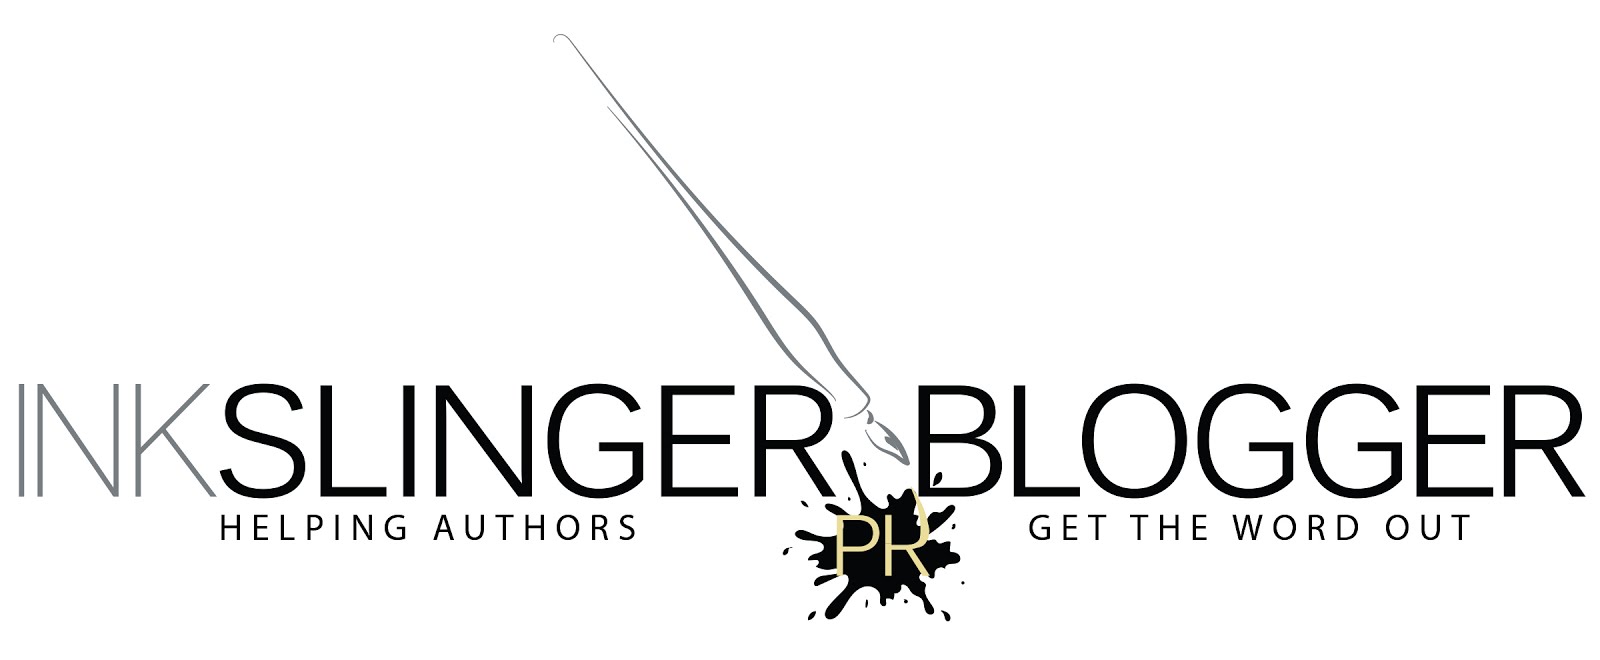 Ink Slinger Blogger